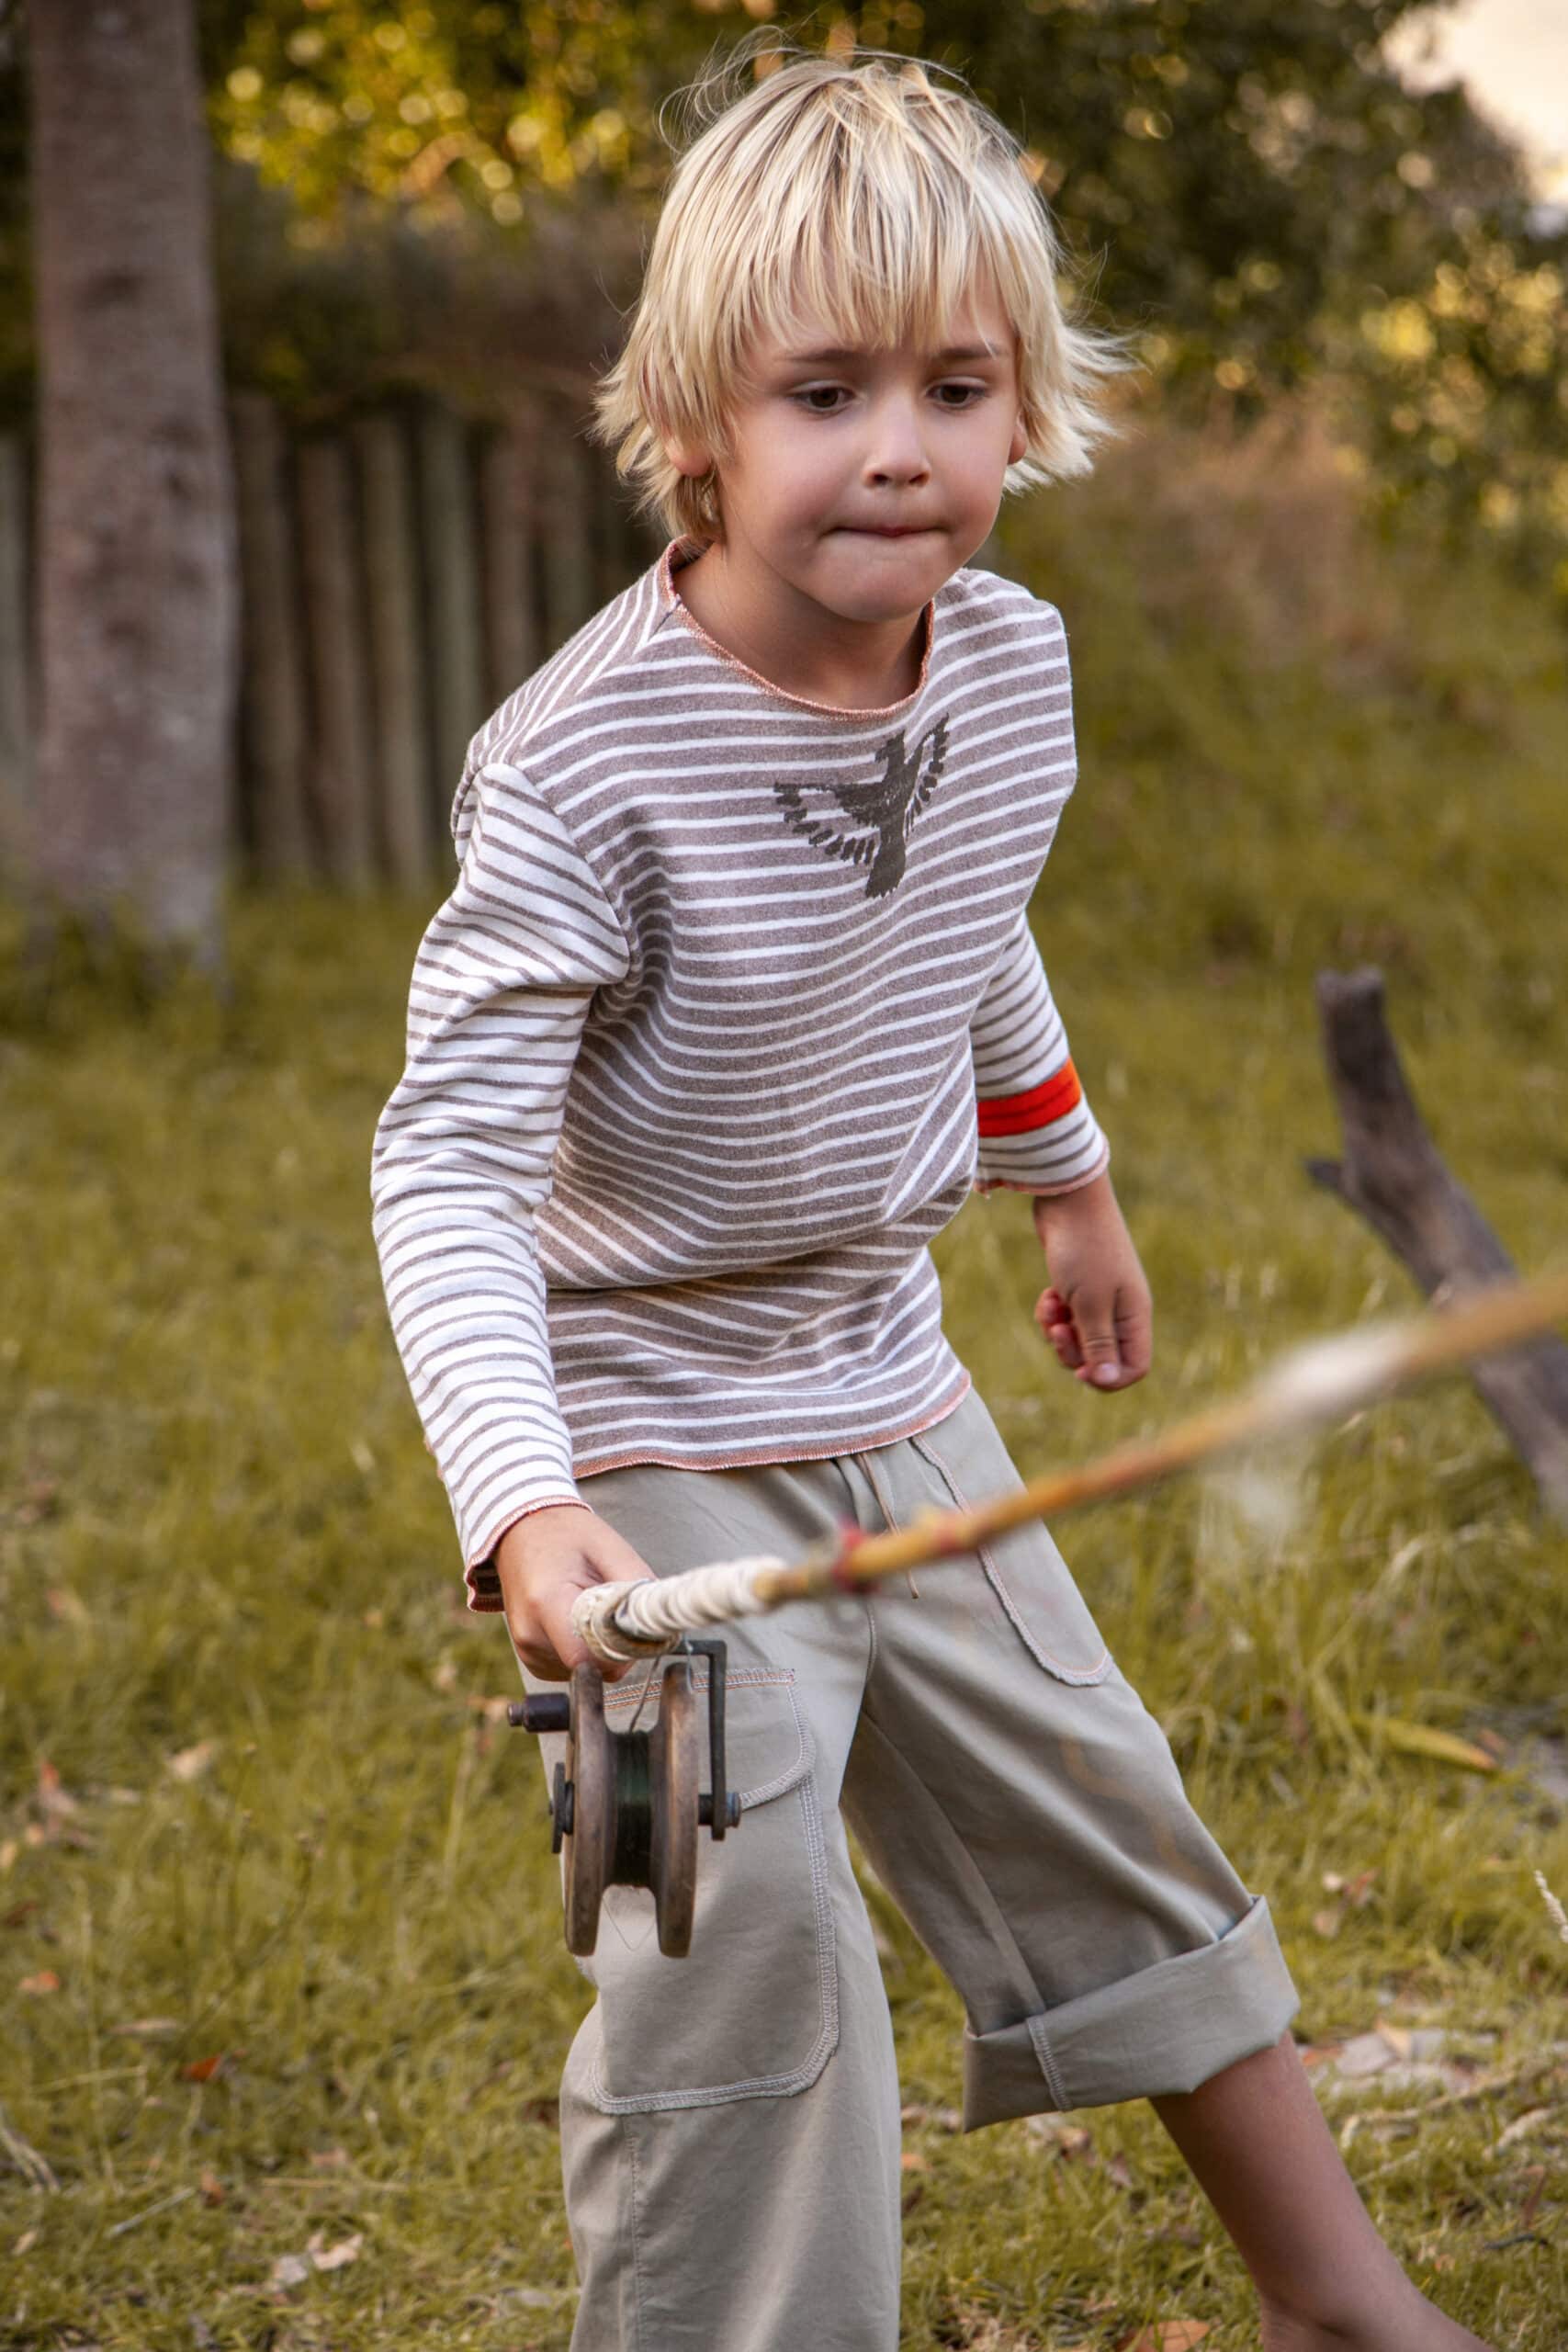 Ein kleiner Junge mit blondem Haar spielt im Freien. Er zieht konzentriert an einem Seil, das an einem hölzernen Flaschenzug befestigt ist. Er trägt ein gestreiftes Langarmshirt und Shorts und steht auf einer Rasenfläche mit Bäumen im Hintergrund. © Fotografie Tomas Rodriguez